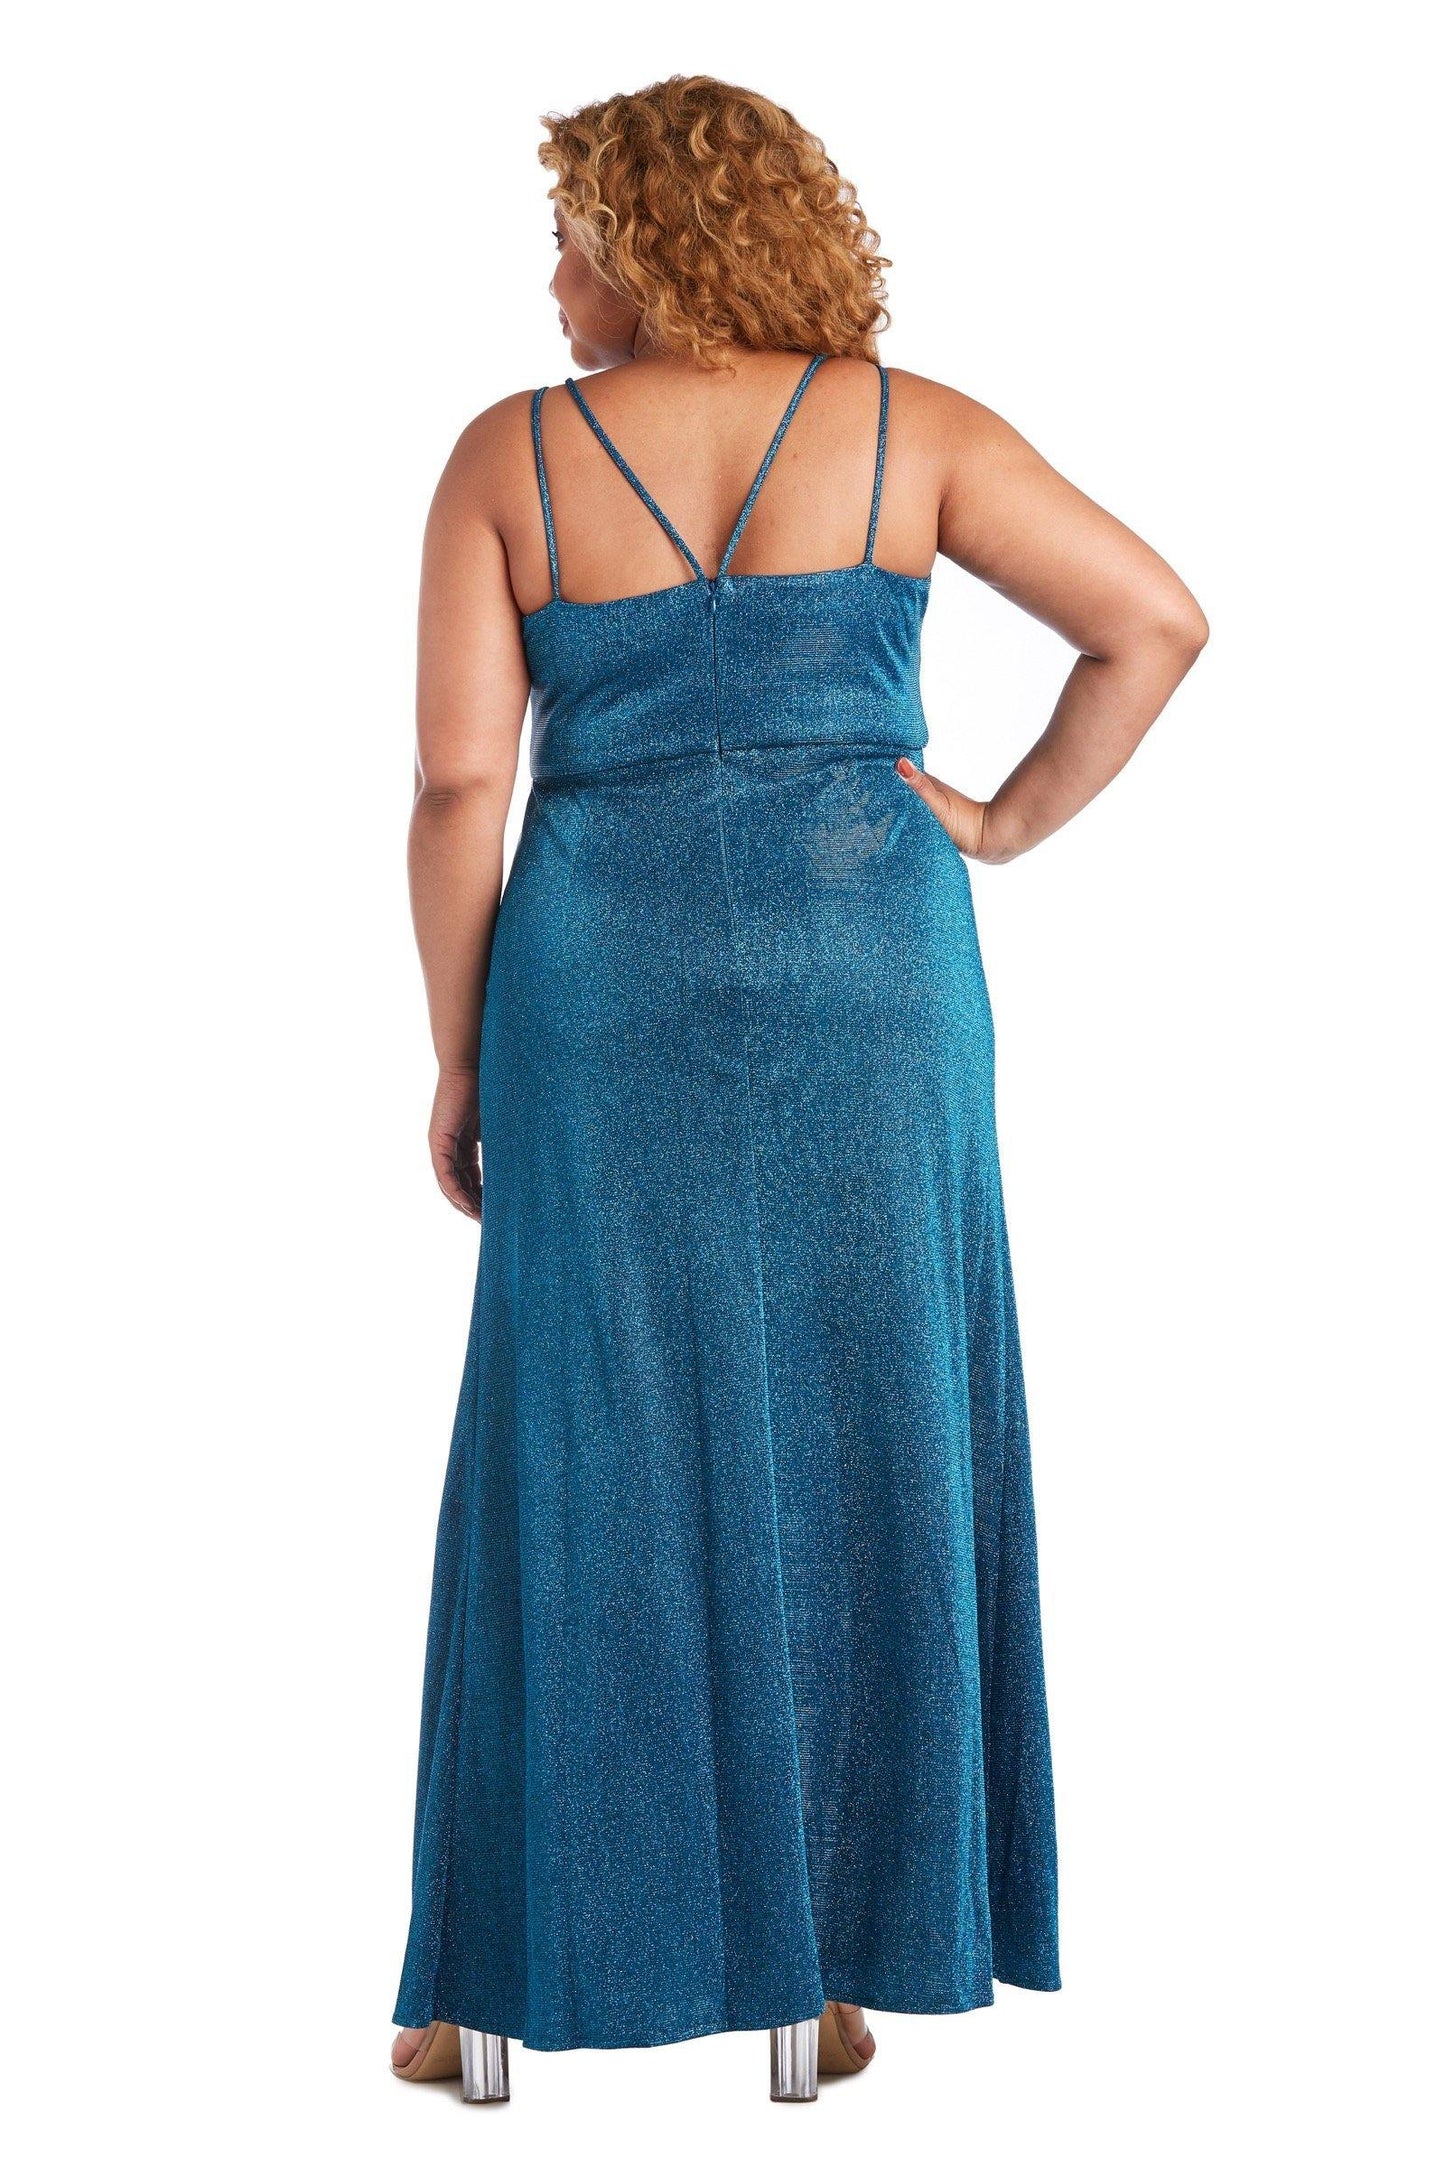 Morgan & Co Plus Size Long Metallic Dress 12841WM - The Dress Outlet